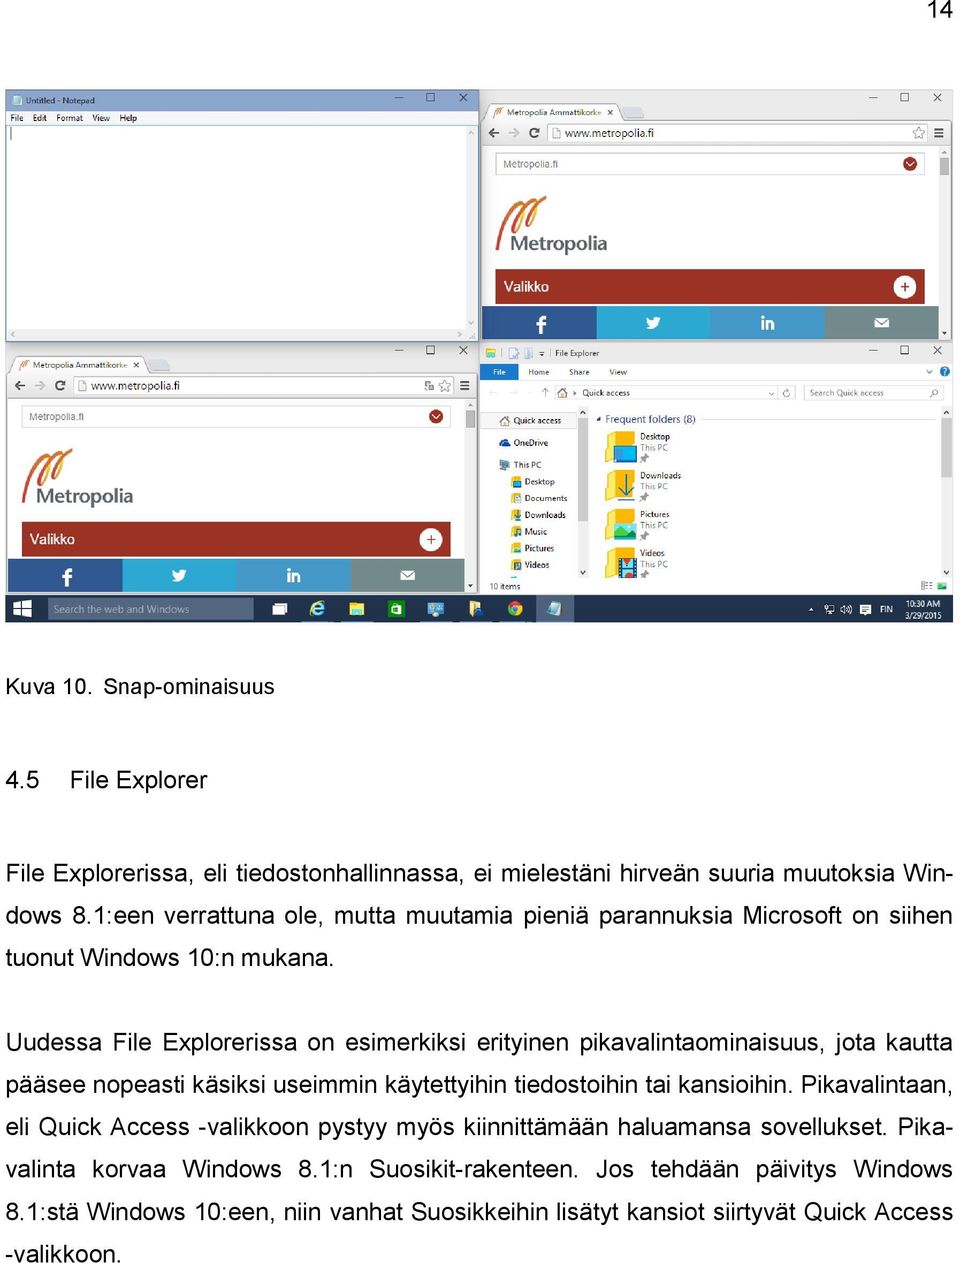 Uudessa File Explorerissa on esimerkiksi erityinen pikavalintaominaisuus, jota kautta pääsee nopeasti käsiksi useimmin käytettyihin tiedostoihin tai kansioihin.